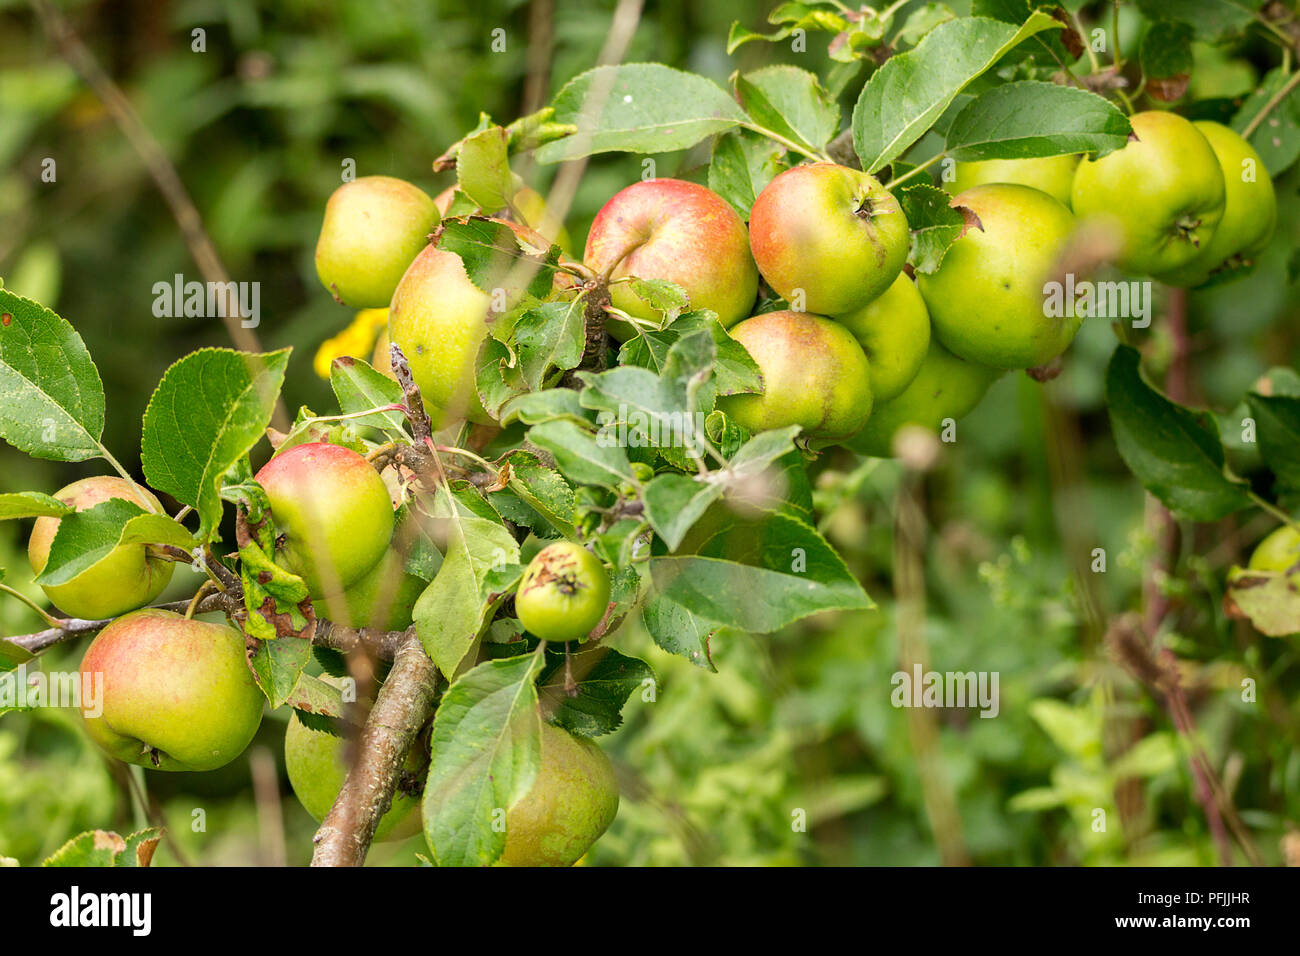 Äpfel wachsen Bereit zur Abholung aber in einem Naturschutzgebiet niedrig und zufällig erscheinen, gut für die Tierwelt. Grün und rosey roten Früchten auf kleinen beladenen Zweigen. Stockfoto